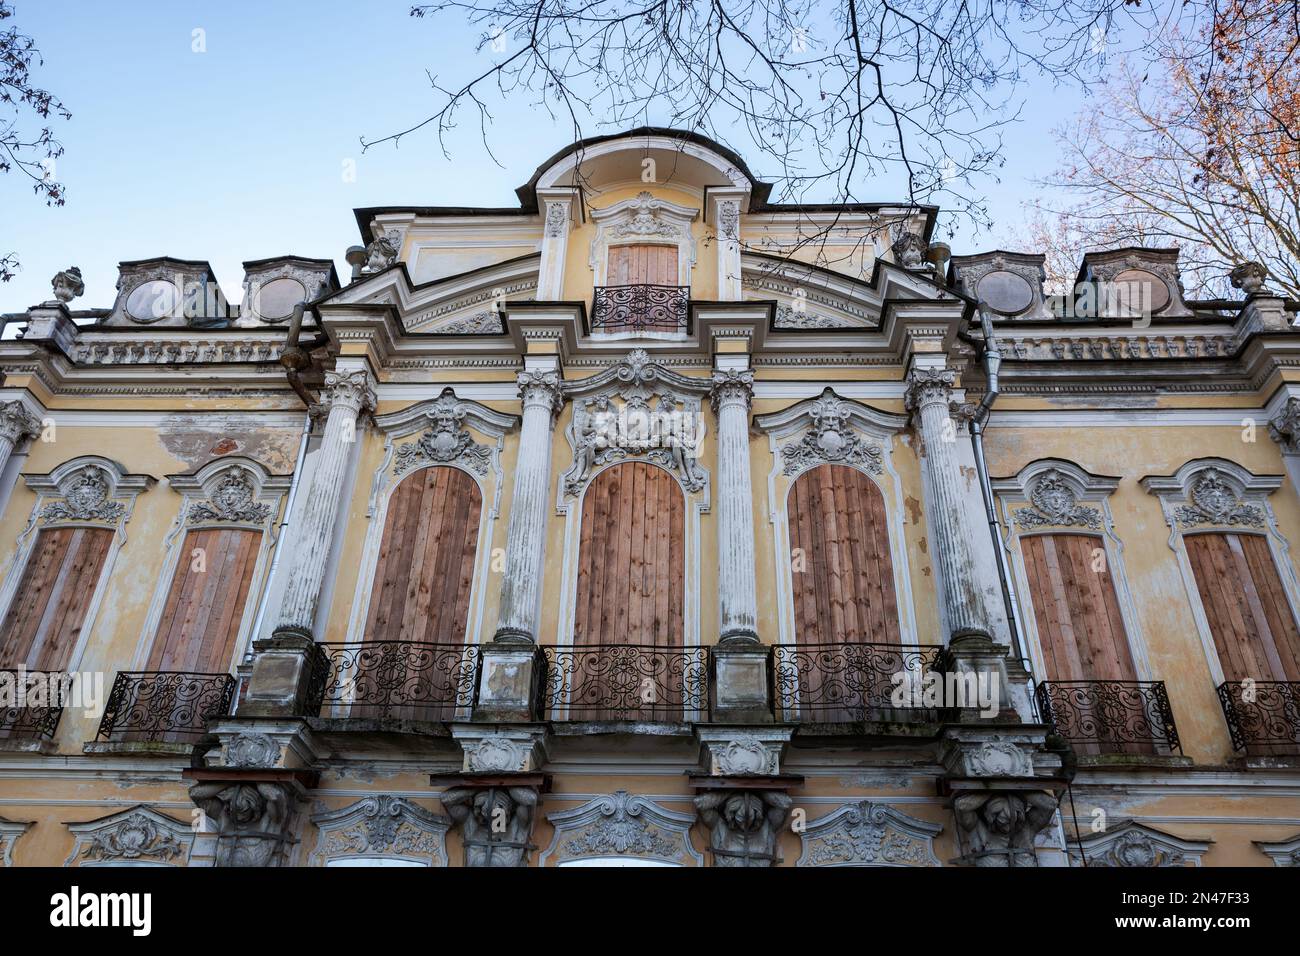 Facciata della sua Dacha di proprietà dell'imperatrice Catherine Petrovna. E' in fase di restauro. Peterhof, San Pietroburgo, Russia Foto Stock